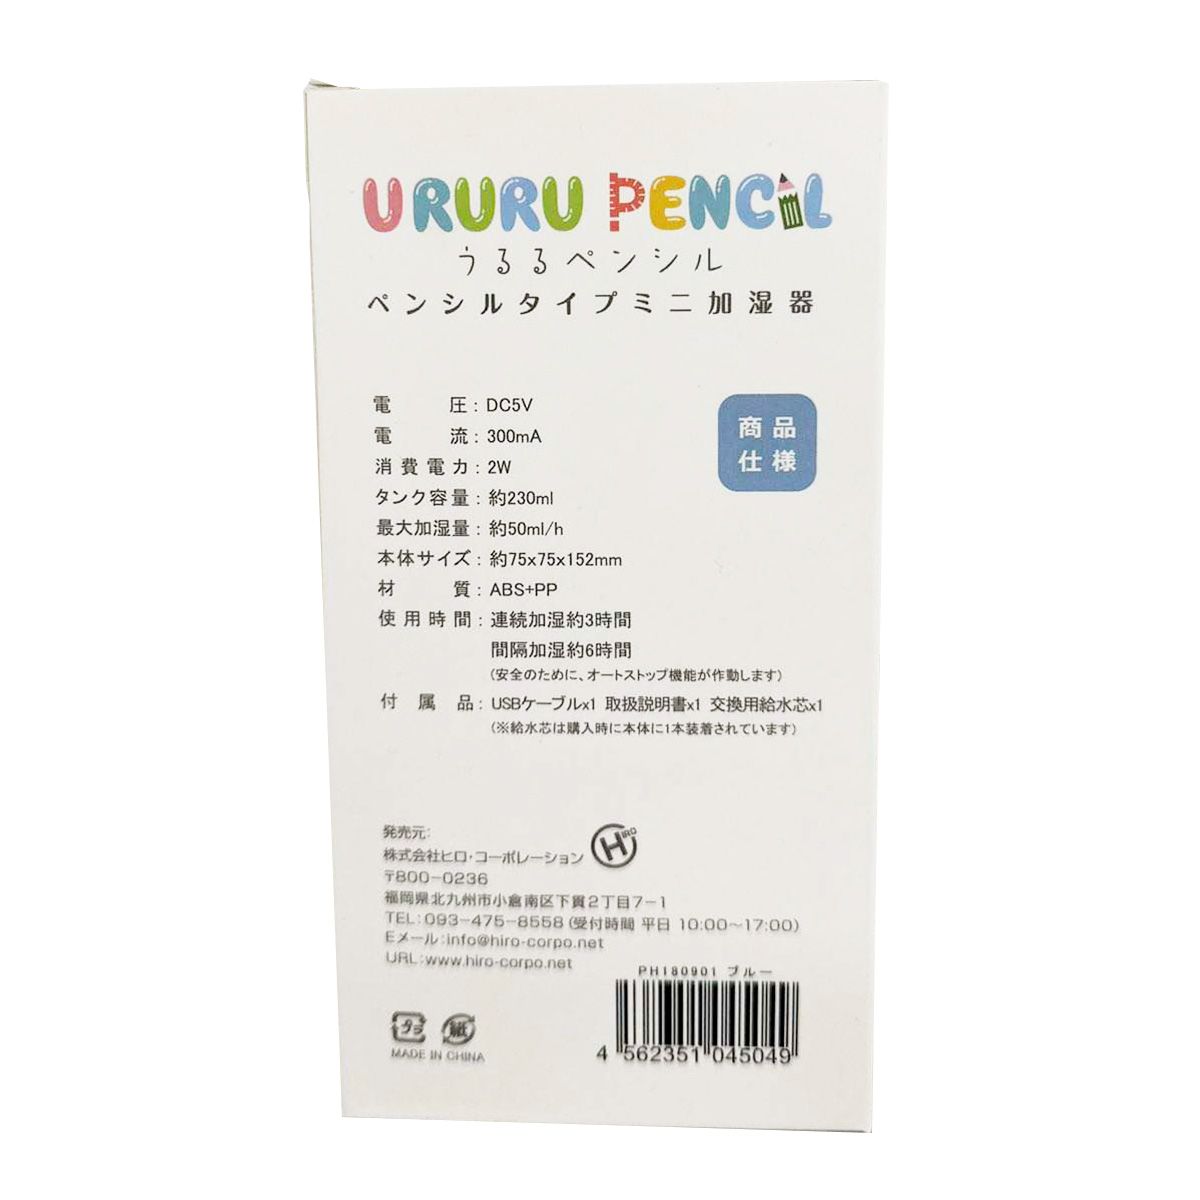 【OUTLET】ペンシル型 ミニ加湿器 スチーマー URURU PENCIL（うるるぺんしる）ブルー  ヒロ・コーポレーション  323378